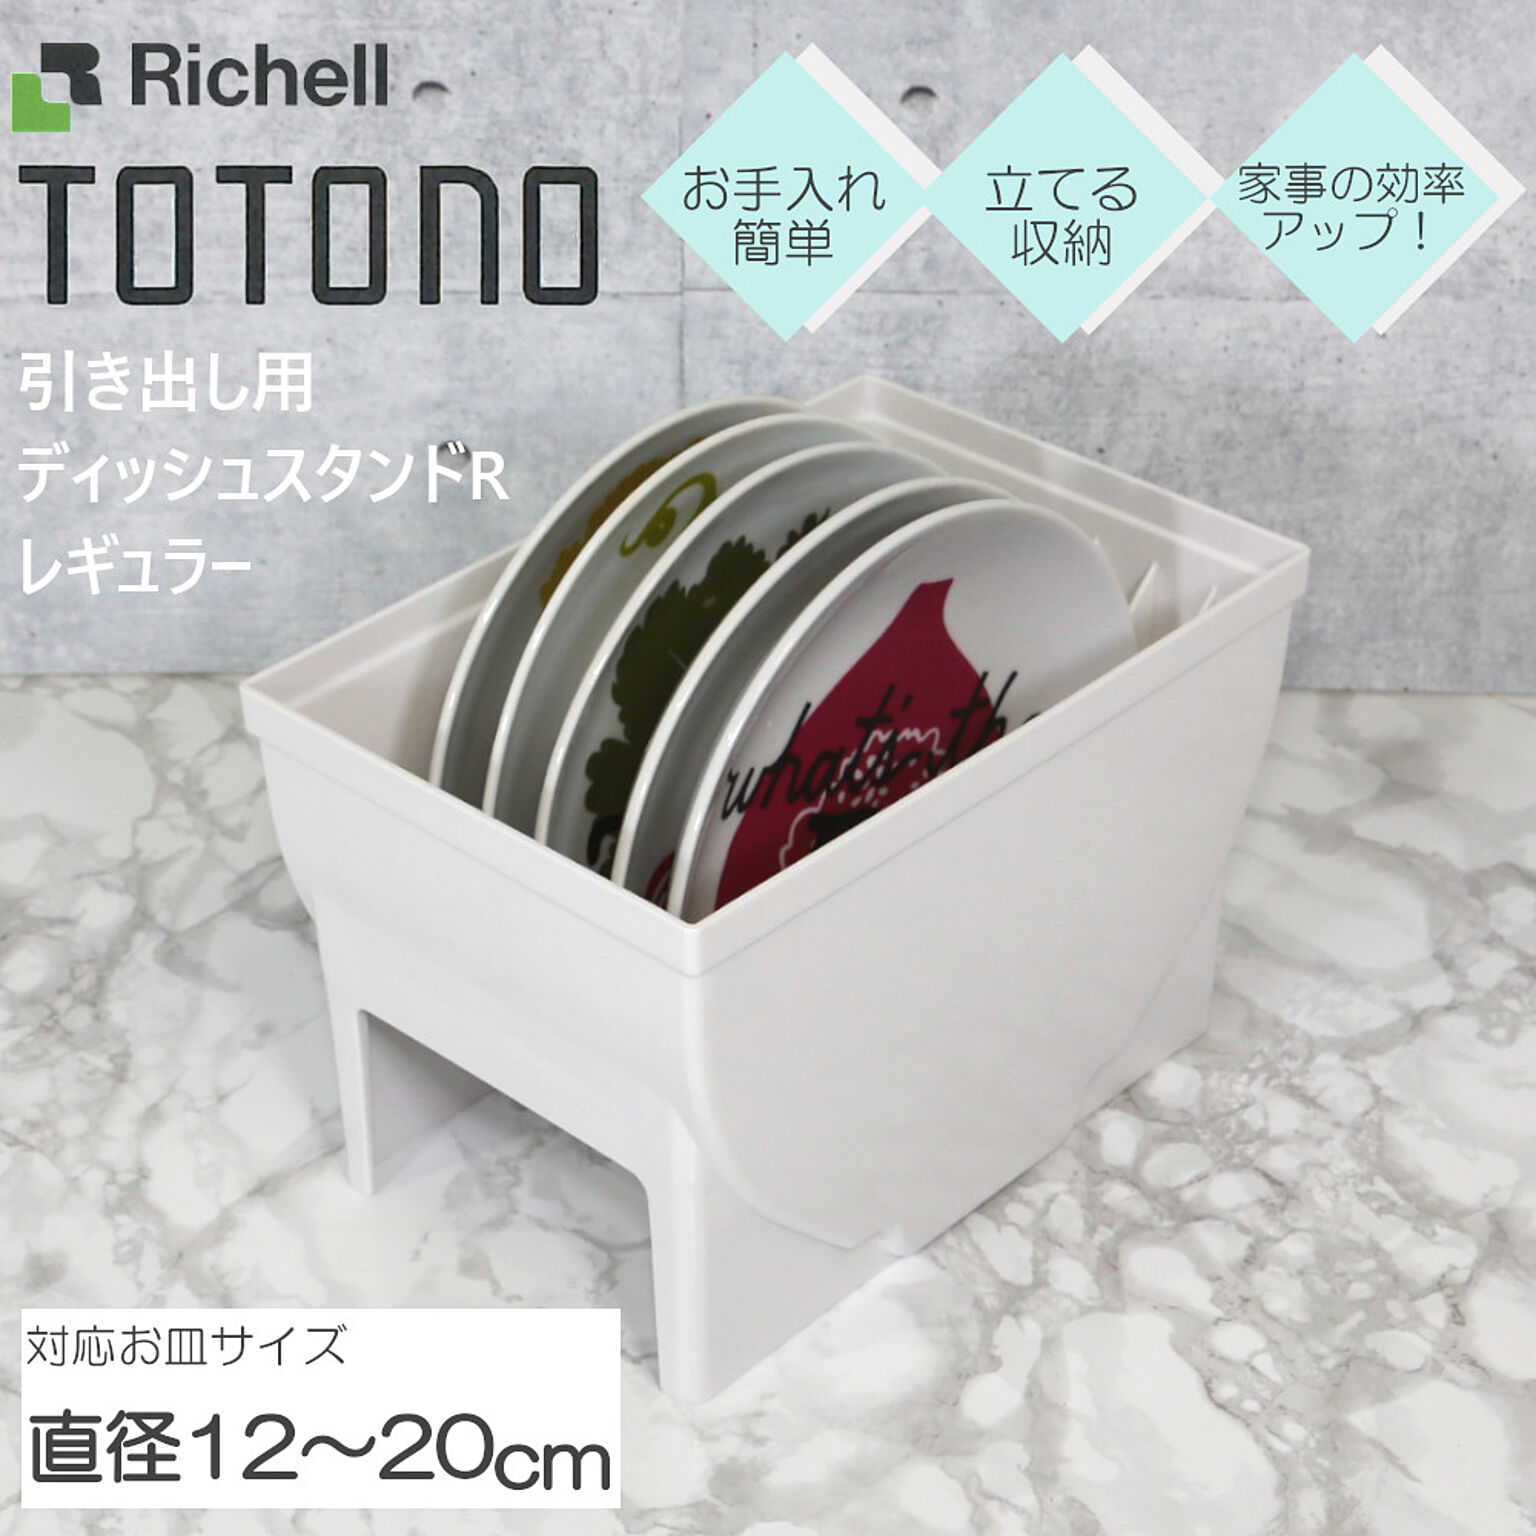 トトノ ディッシュスタンド レギュラー 引き出し用 R リッチェル 皿 皿立て 整理 収納 抗菌 加工 新 TOTONO